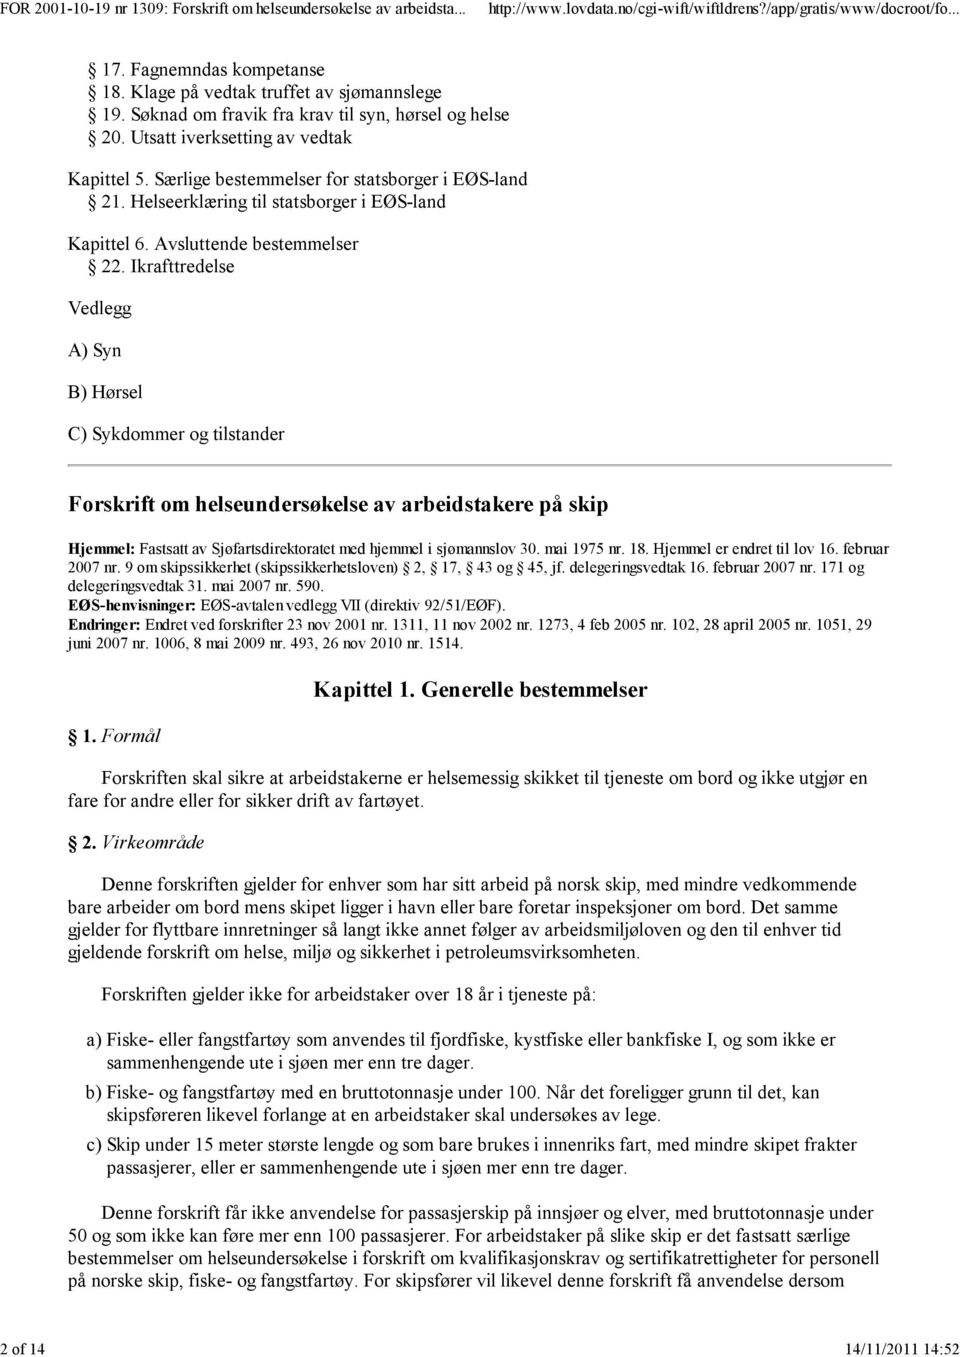 Helseerklæring til statsborger i EØS-land Kapittel 6. vsluttende bestemmelser 22.